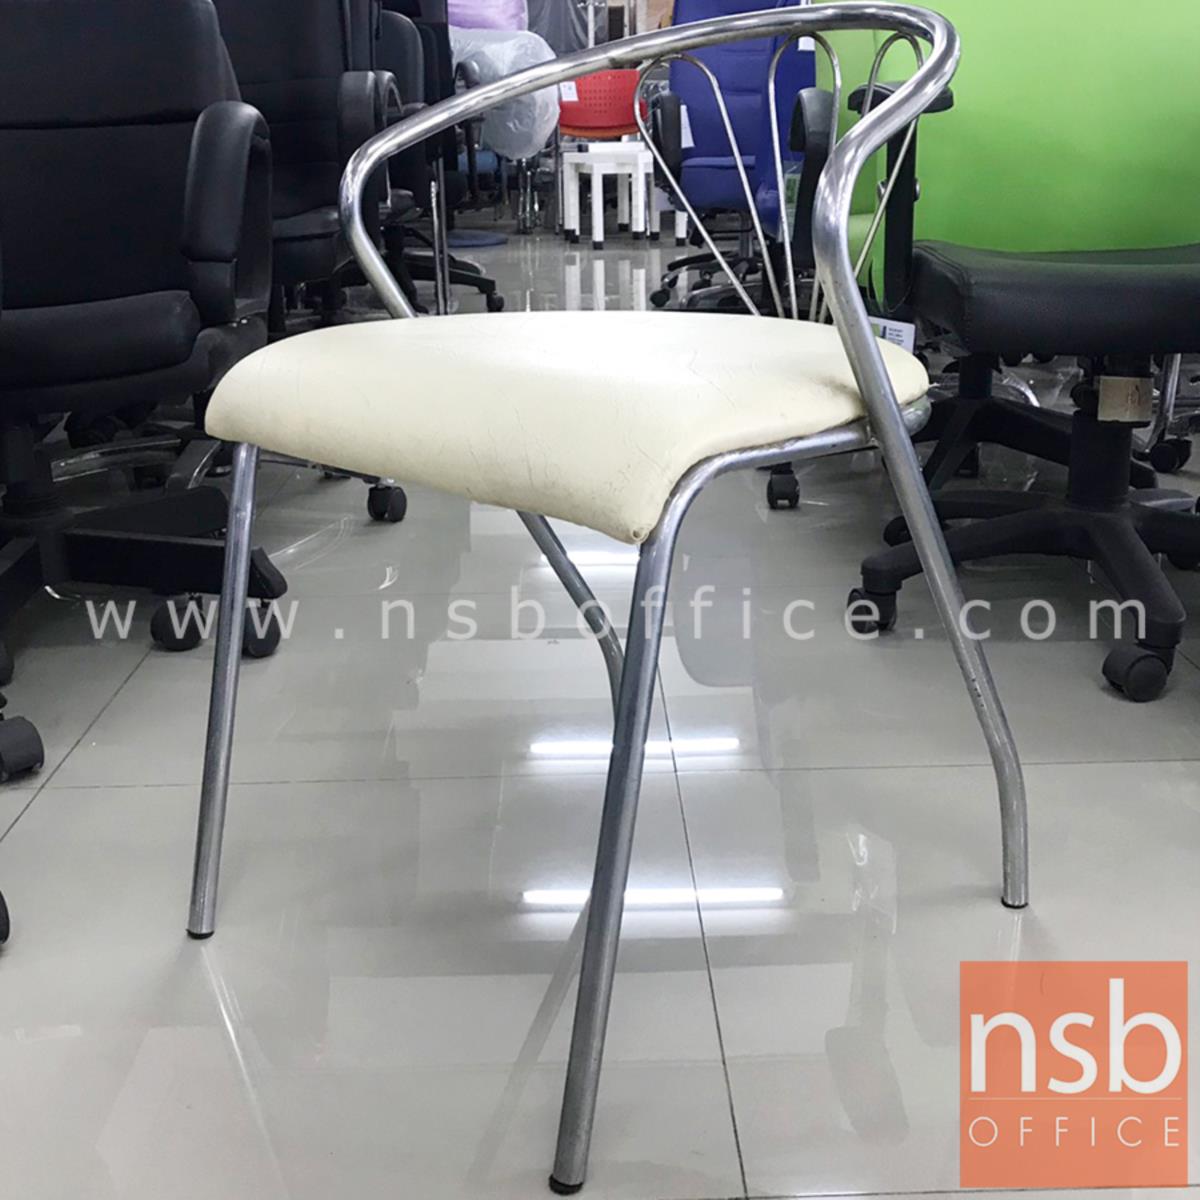 L02A307:เก้าอี้โมเดิร์นหนังเทียม รุ่น NSB-CHAIR21 ขนาด 46W*68H cm. โครงเหล็กชุบโครเมี่ยม (STOCK-1 ตัว)